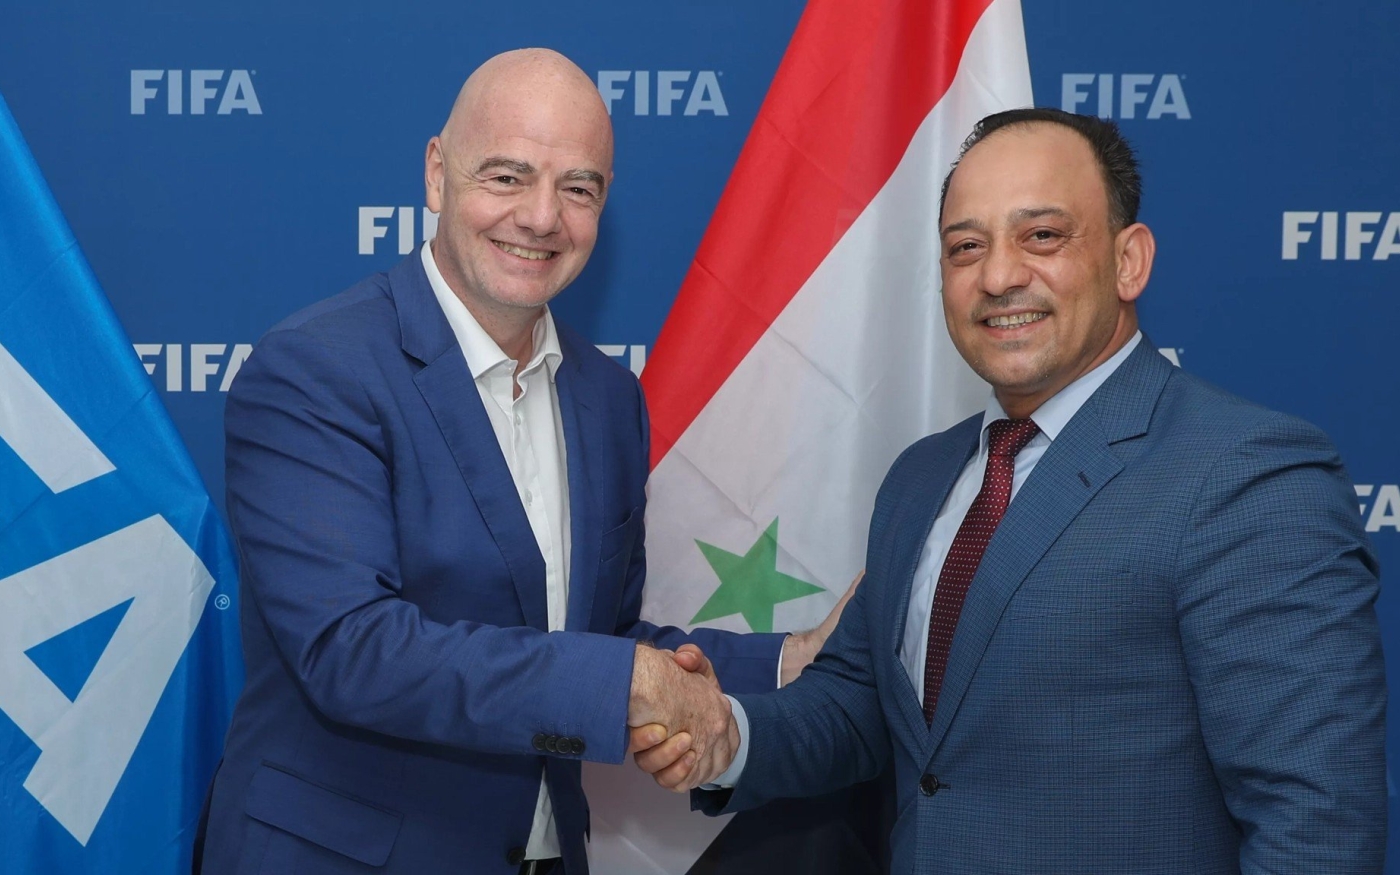 Le président de la FIFA Gianni Infantino et le président de la Fédération syrienne de football Salah Edeen Ramadan, lors d’une rencontre à Doha en septembre (FIFA)